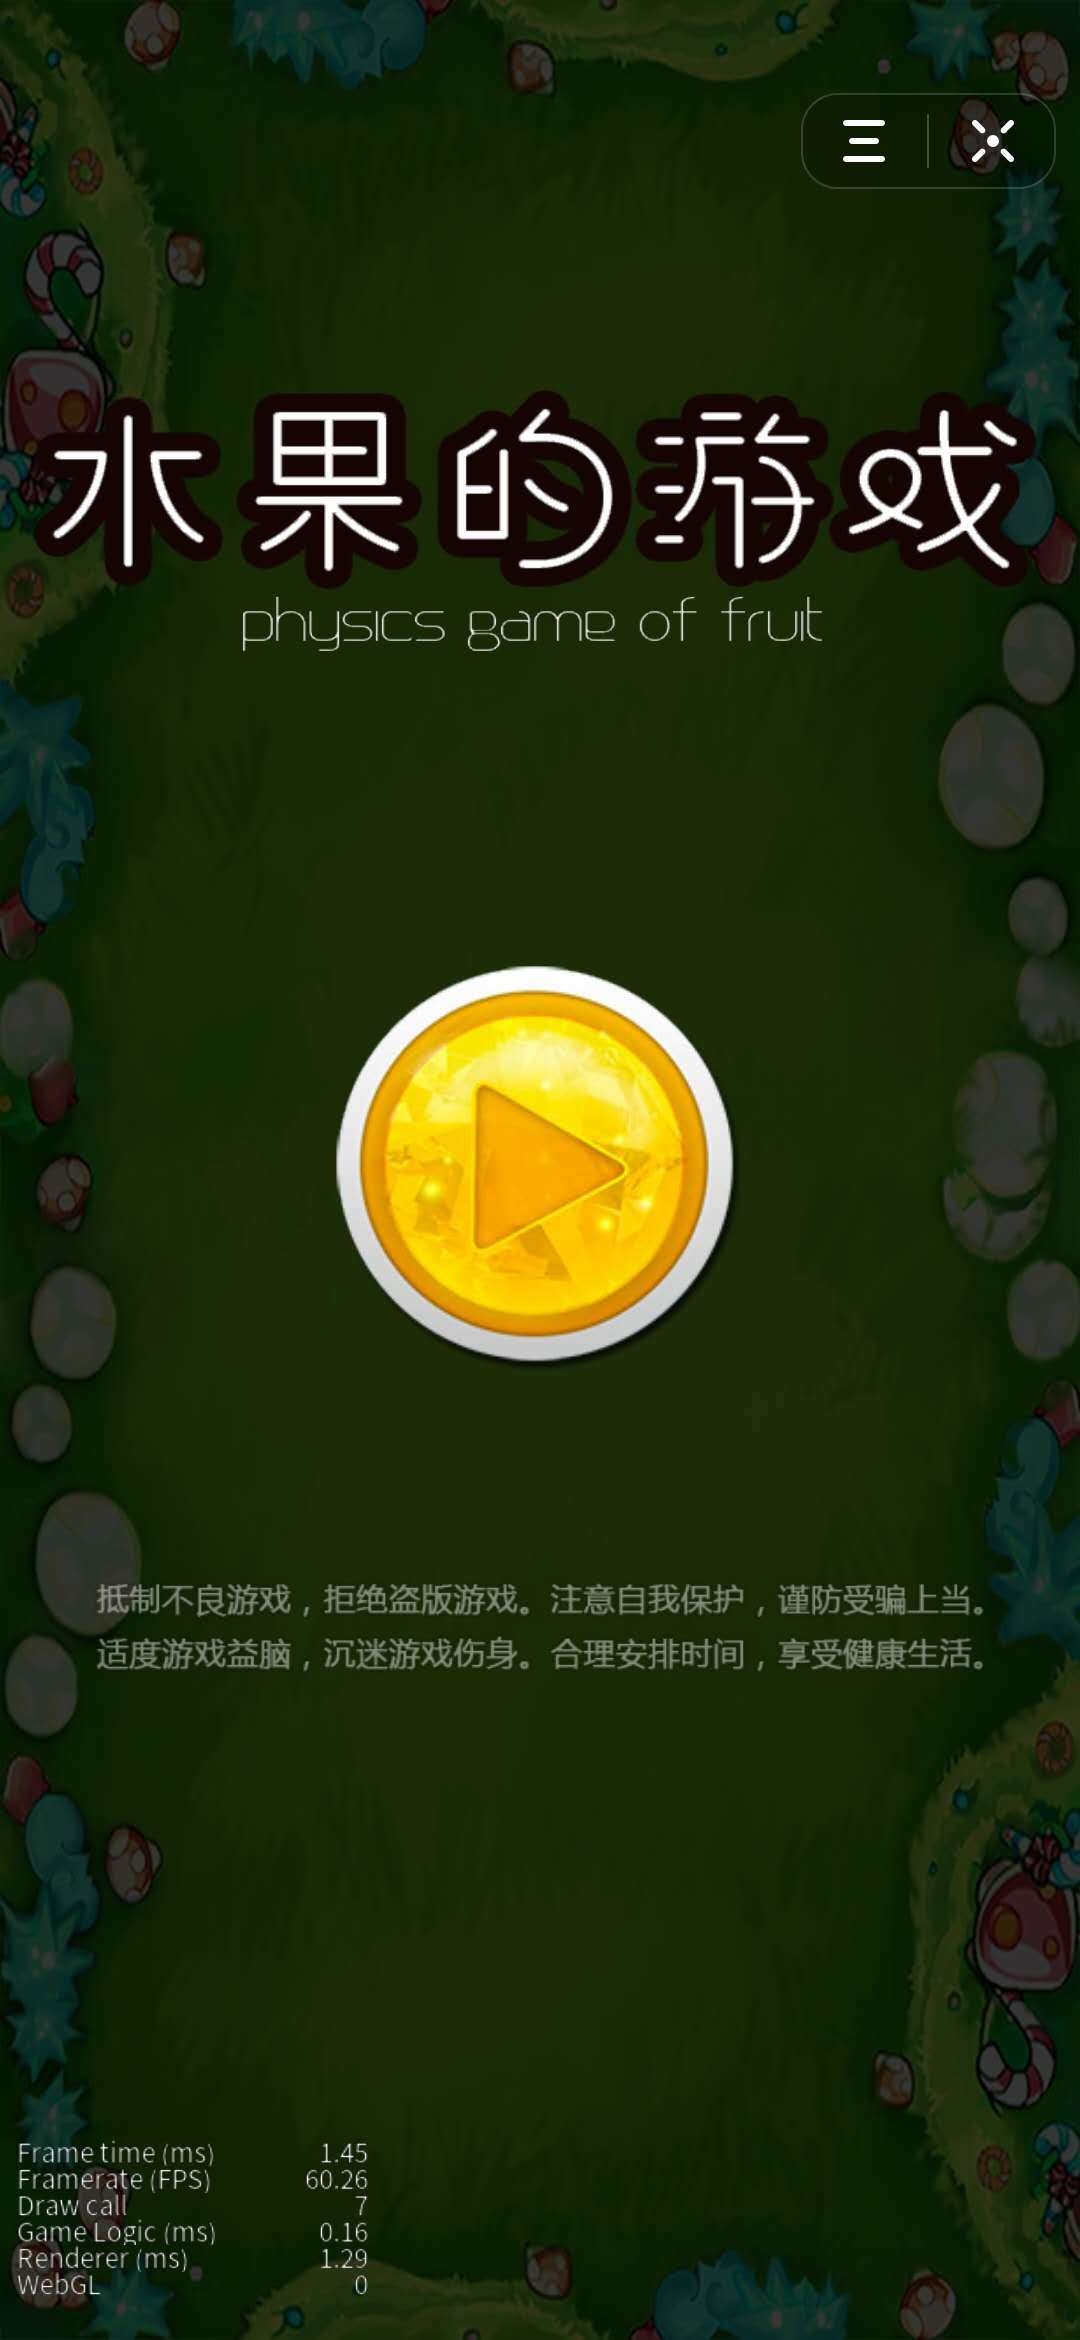 Screenshot 1 of фруктовая игра 2.0